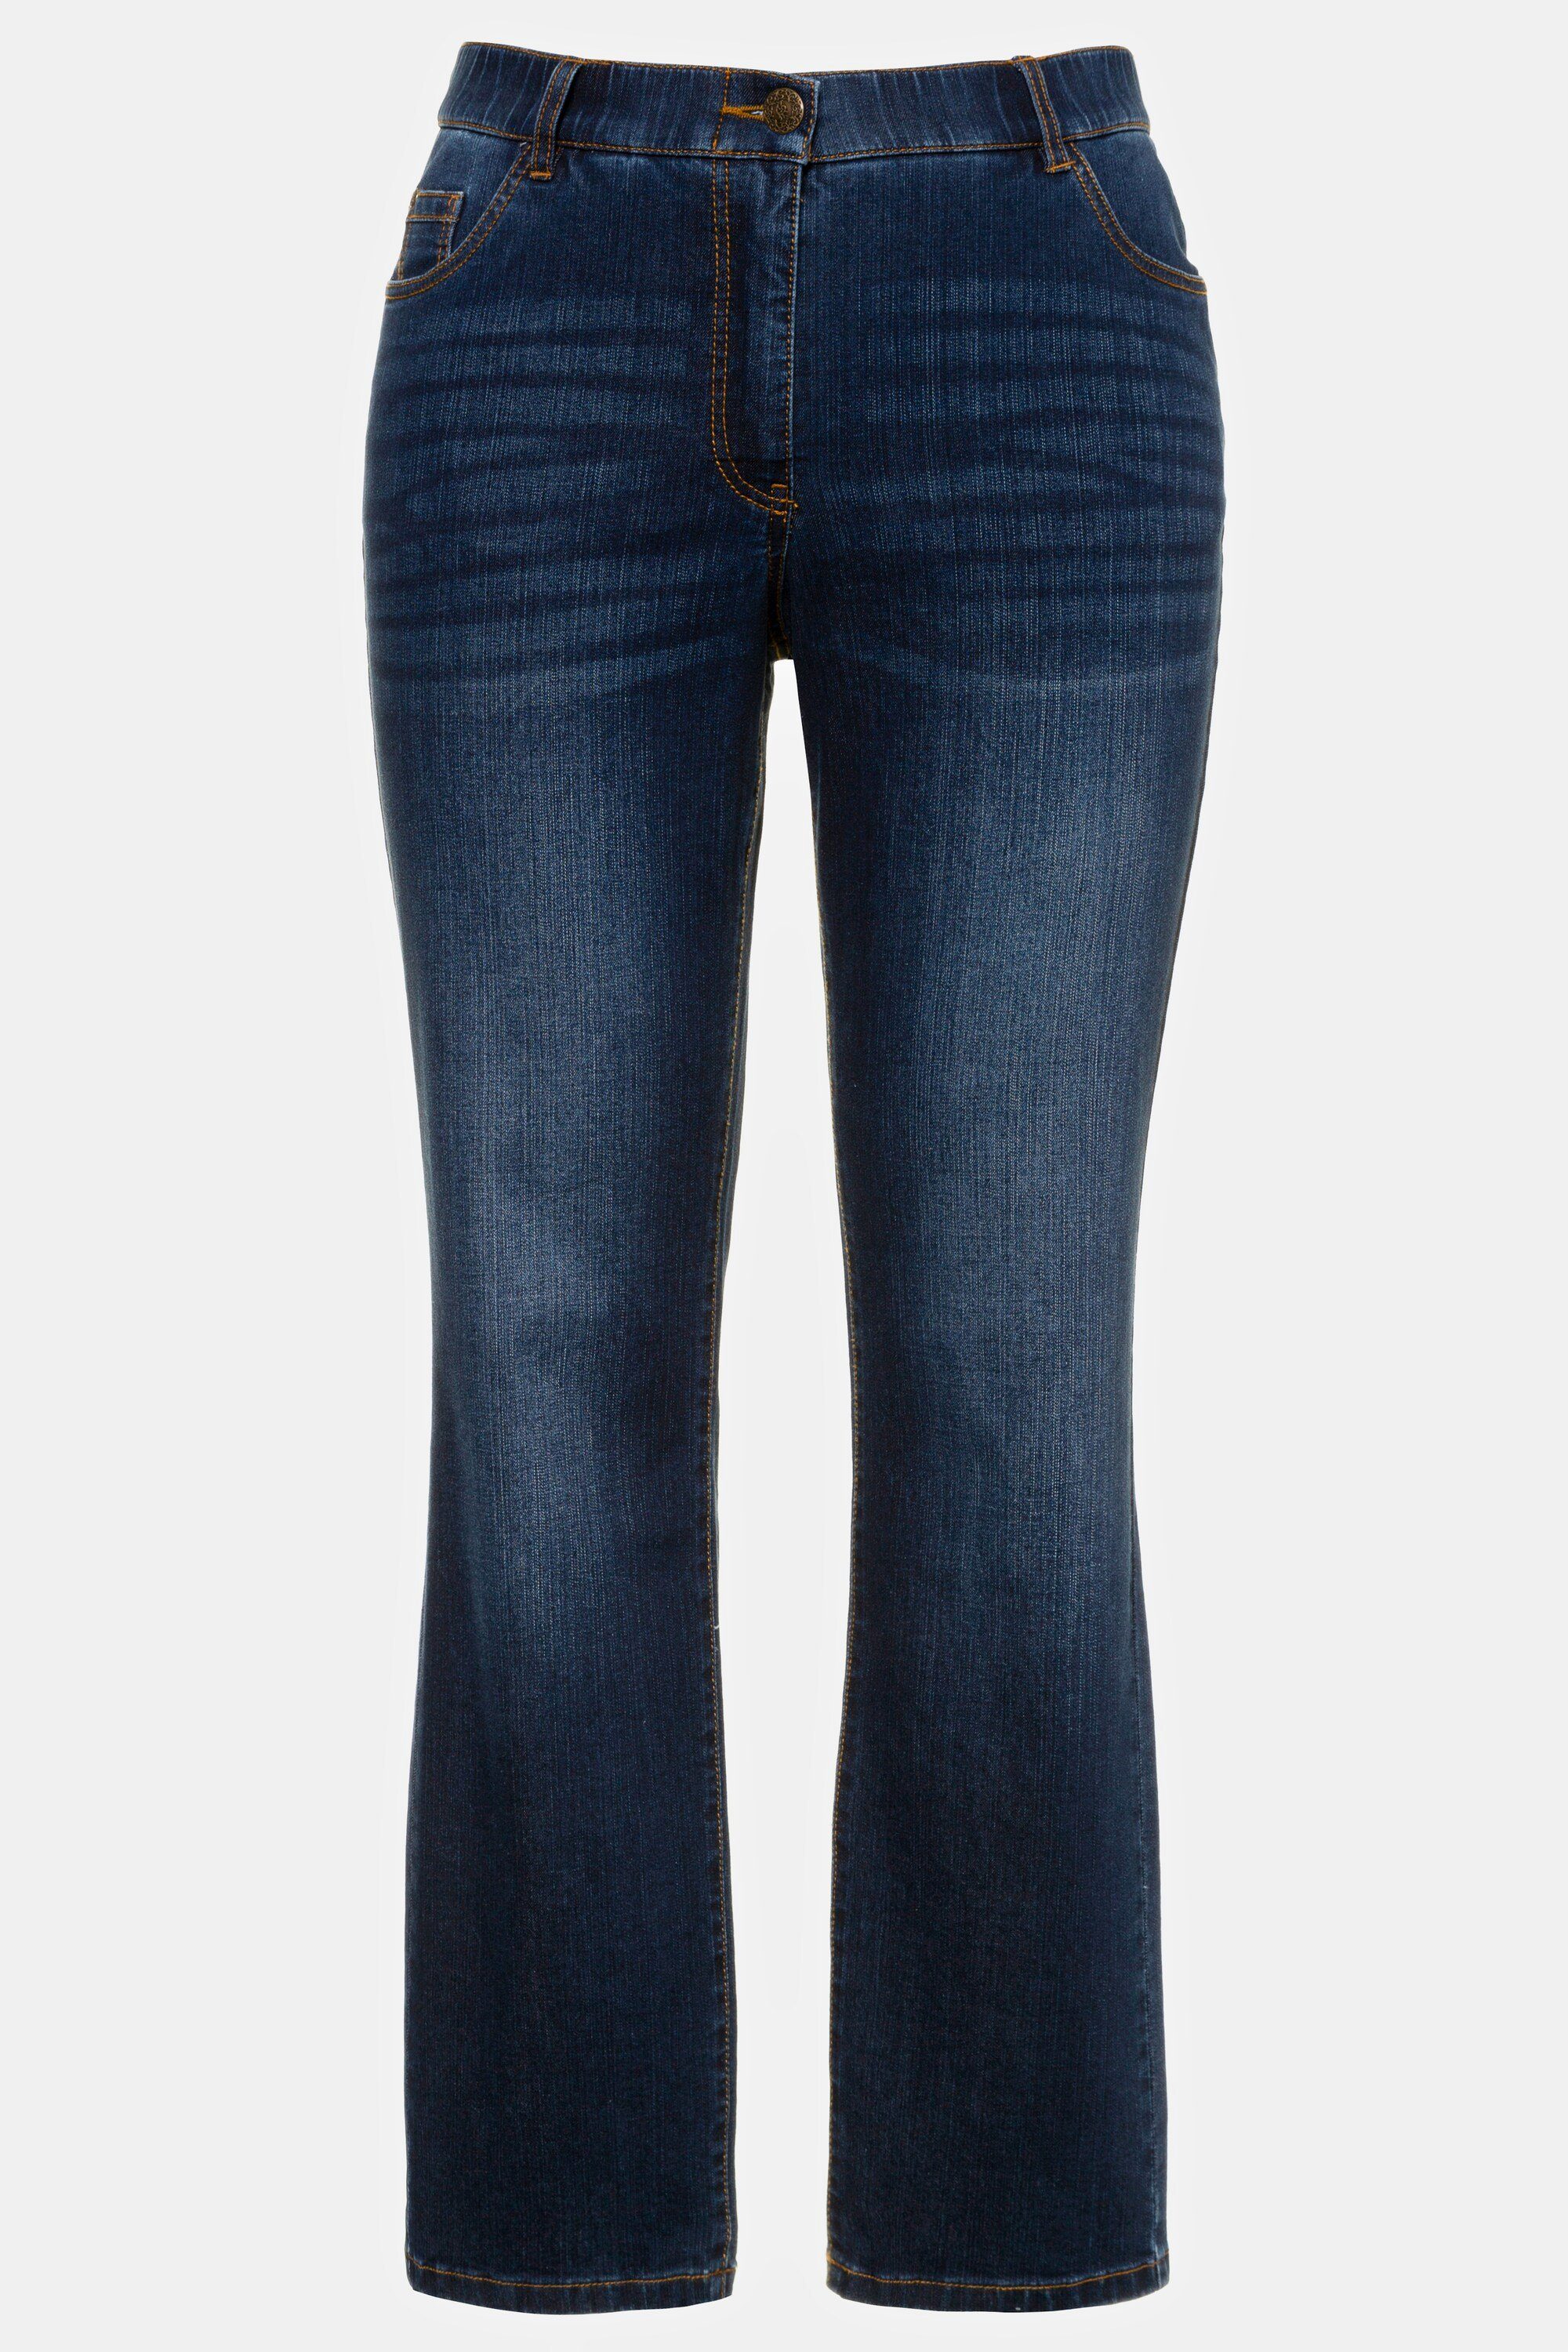 denim Komfortbund 5-Pocket-Form Jeans Popken blue gerade Ulla Mandy Funktionshose